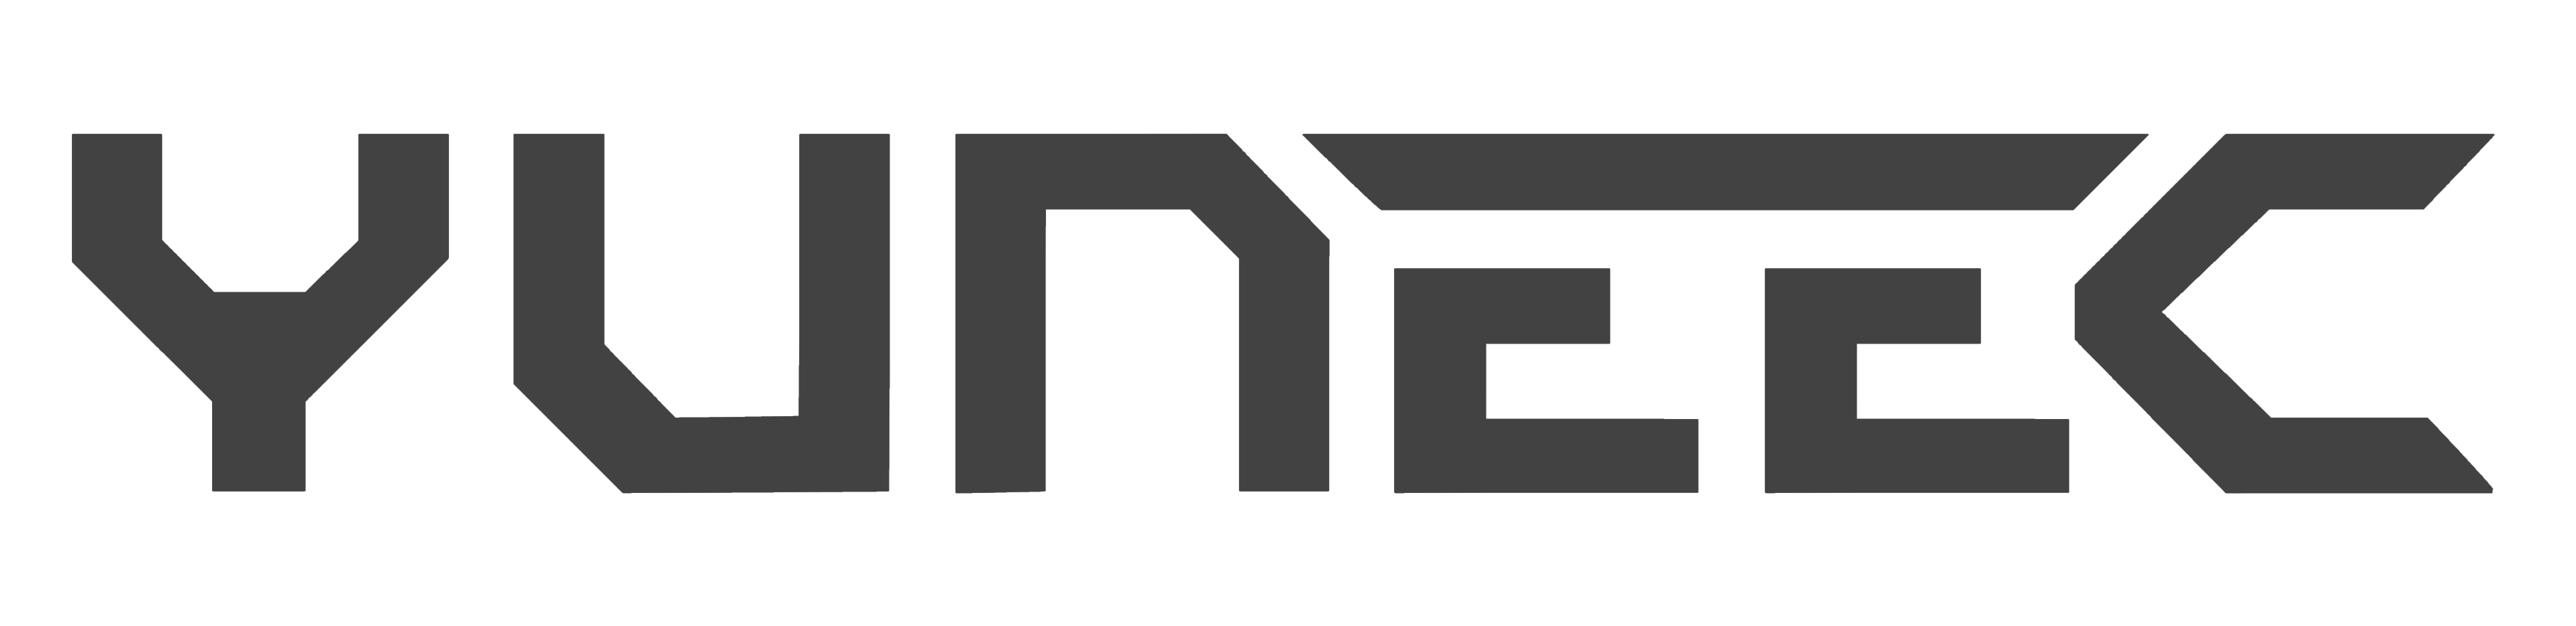 Yuneec logo, logotype